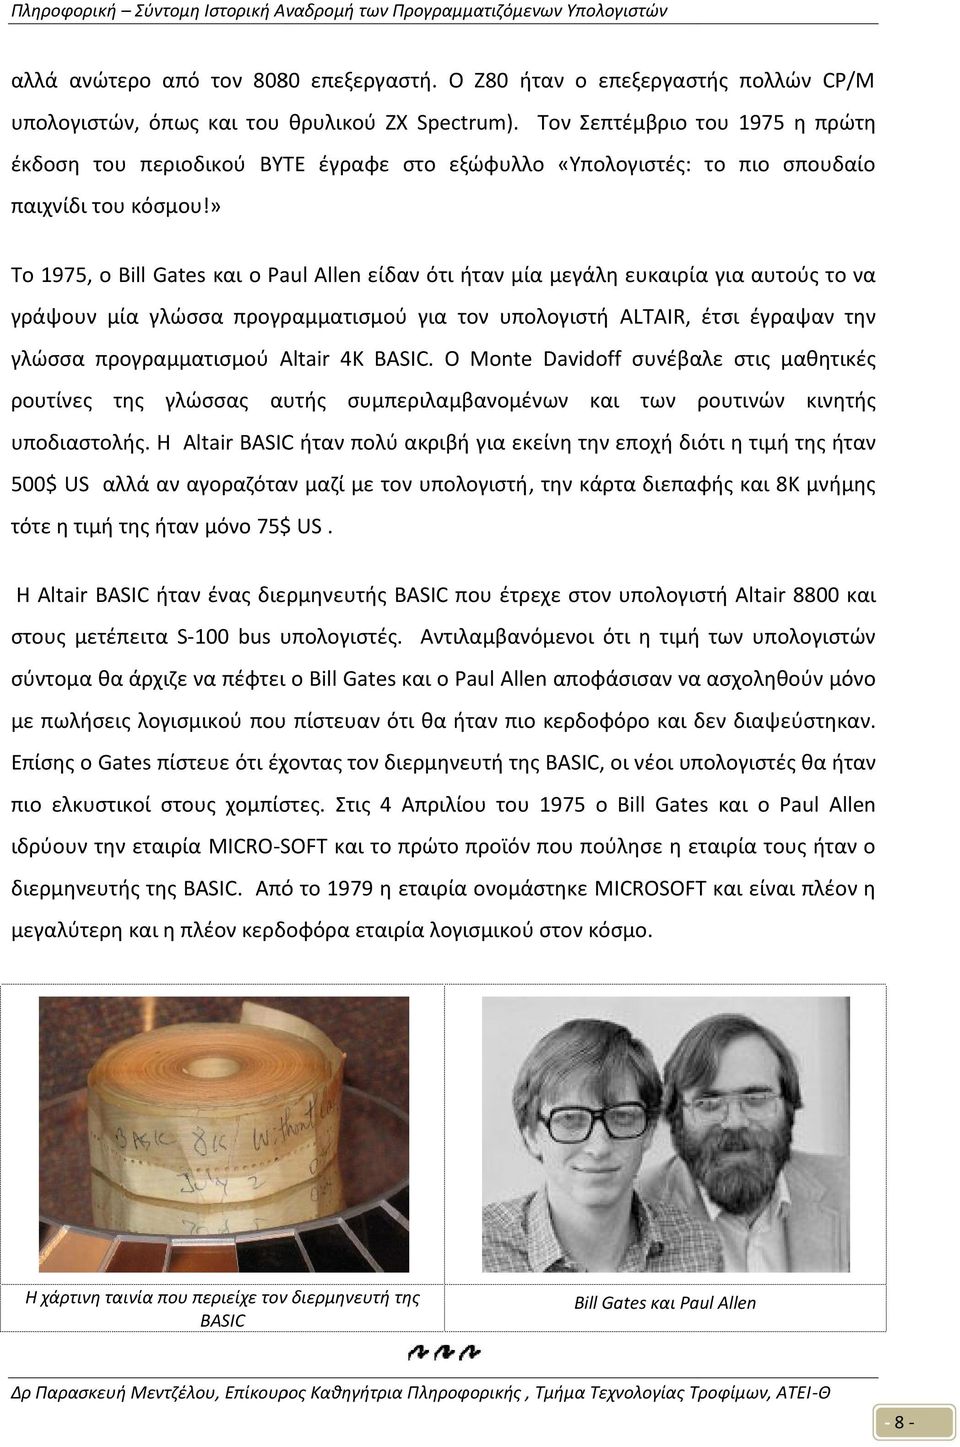 » To 1975, o Bill Gates και o Paul Allen είδαν ότι ήταν μία μεγάλη ευκαιρία για αυτούς το να γράψουν μία γλώσσα προγραμματισμού για τον υπολογιστή ALTAIR, έτσι έγραψαν την γλώσσα προγραμματισμού